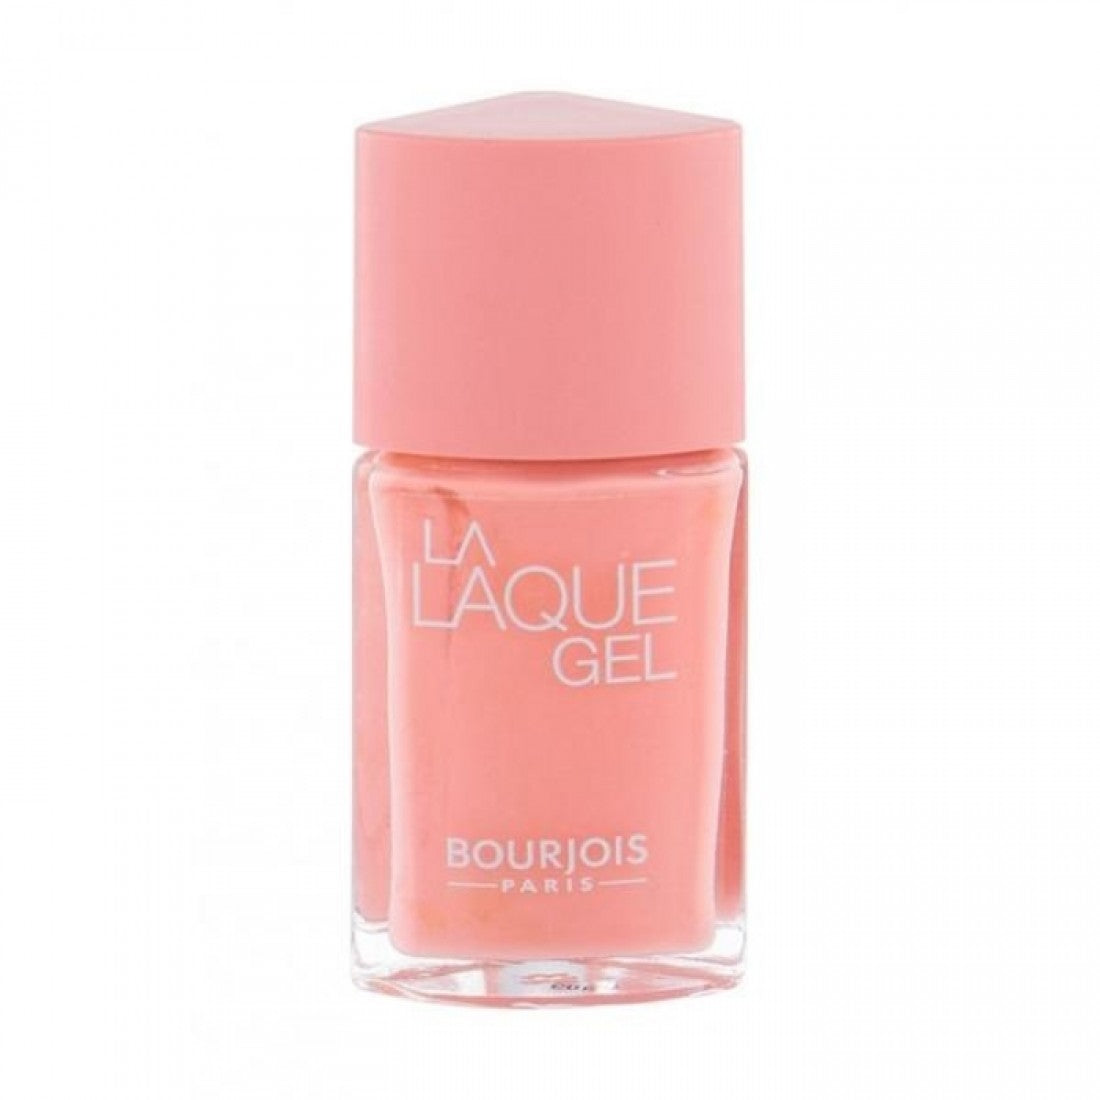 Laque Gel - League 14 – Pink Beauty Pocket Bourjois Nail polish The Pakistan La